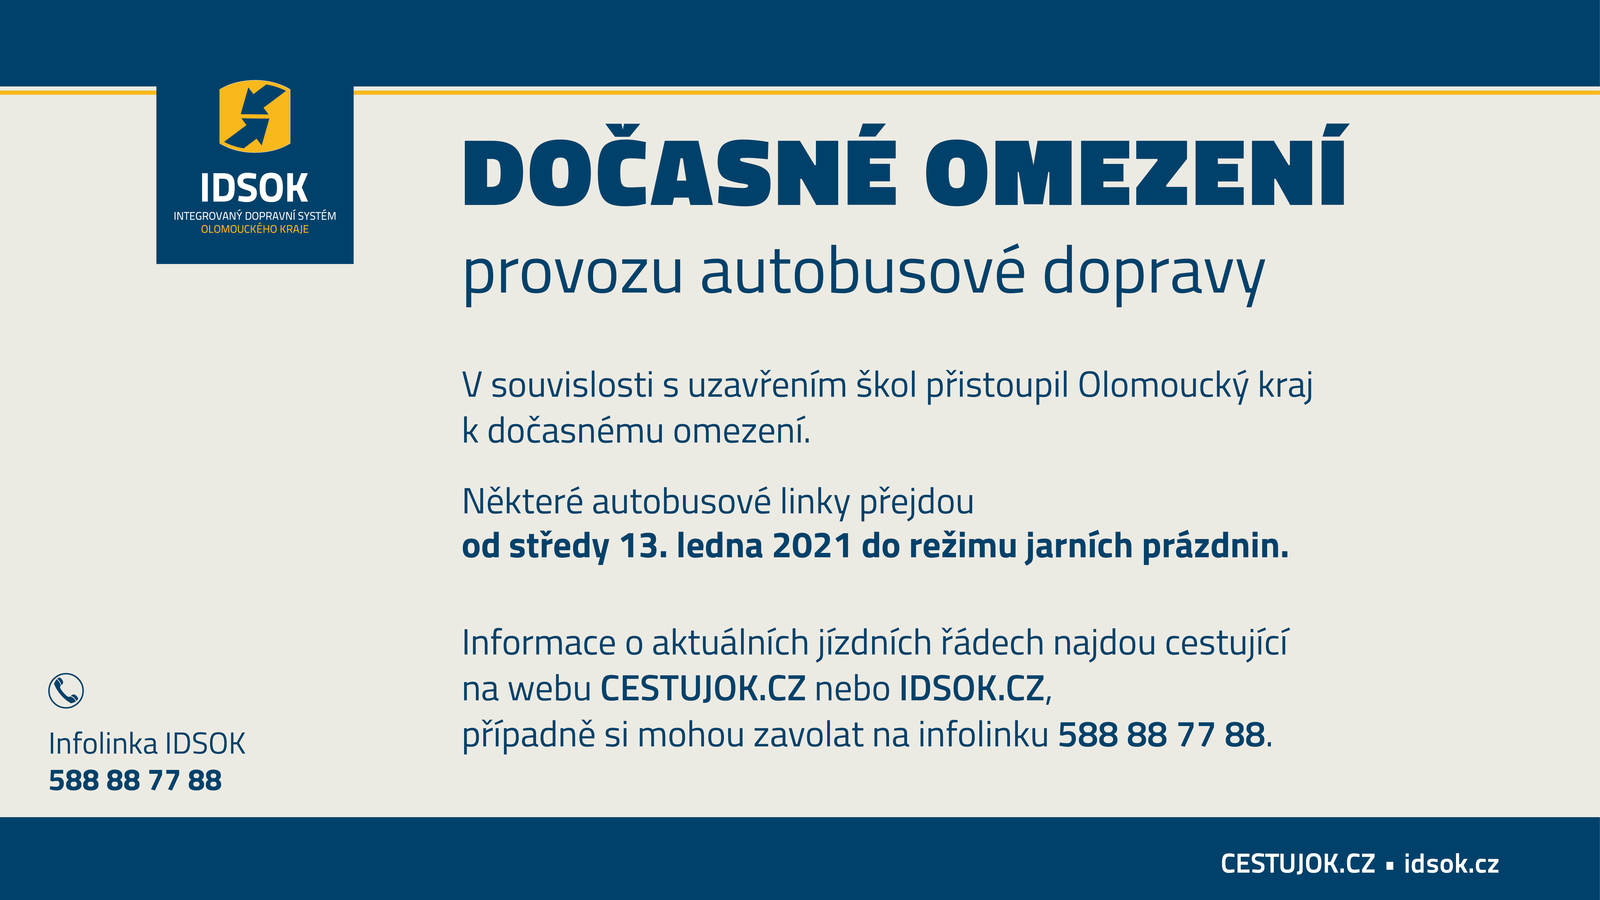 Olomoucký kraj dočasně omezuje autobusovou dopravu od 13. 1. 2021